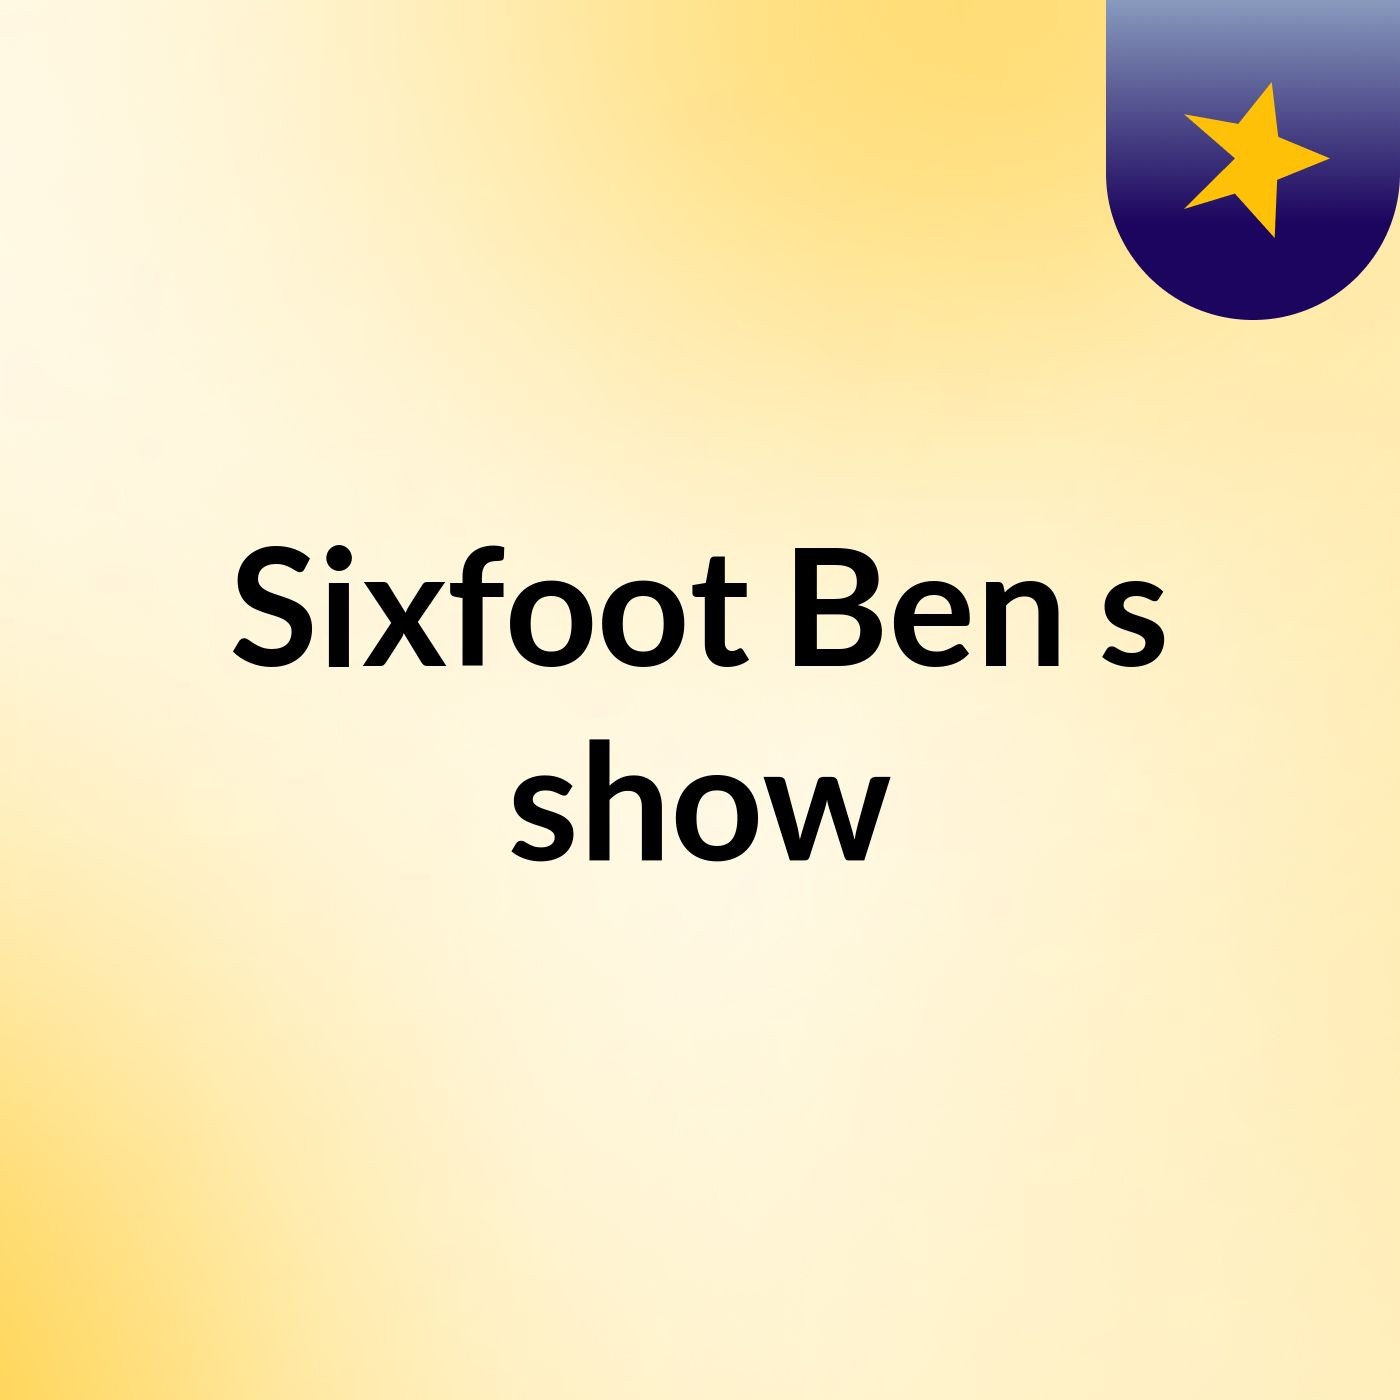 Sixfoot Ben's show